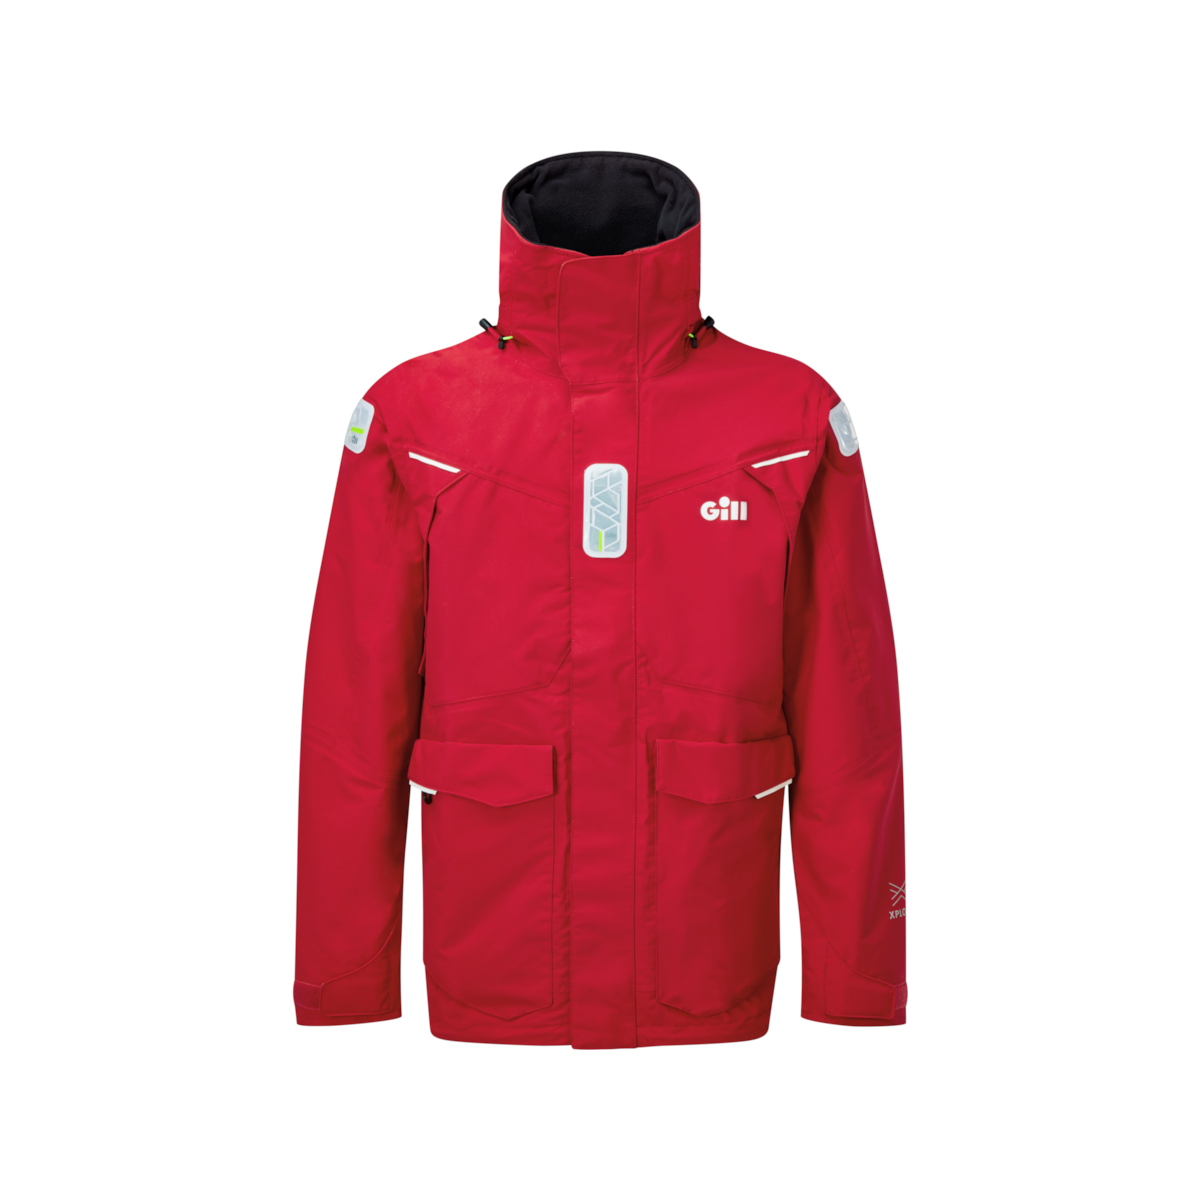 Gill OS25 veste de voile offshore homme rouge, taille XXXL